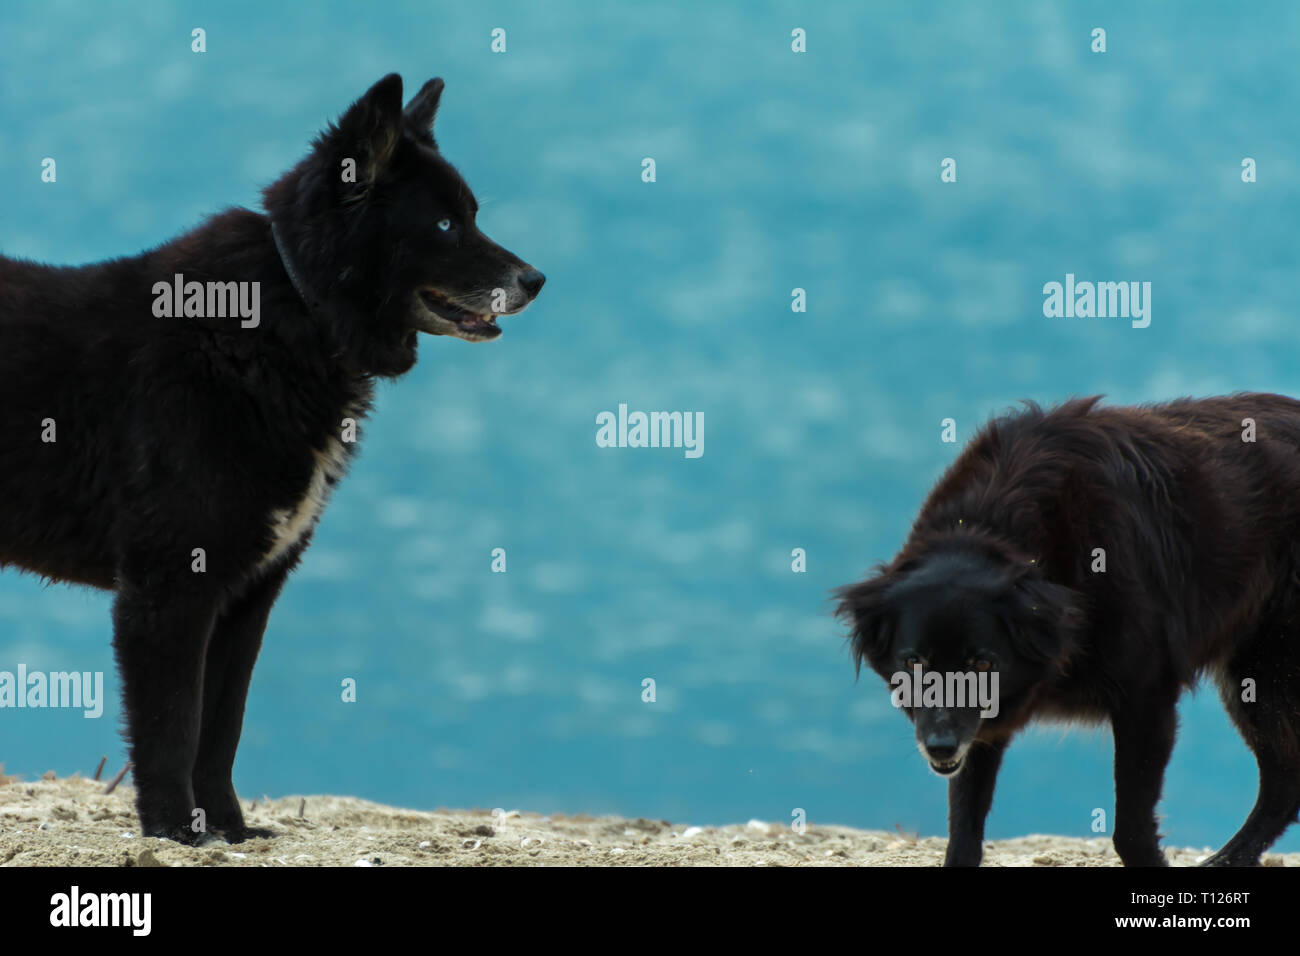 2018, novembre - Paraty, Brasile. Cane nero simile a quella di un lupo o un orso, in piedi sulla spiaggia. Foto Stock